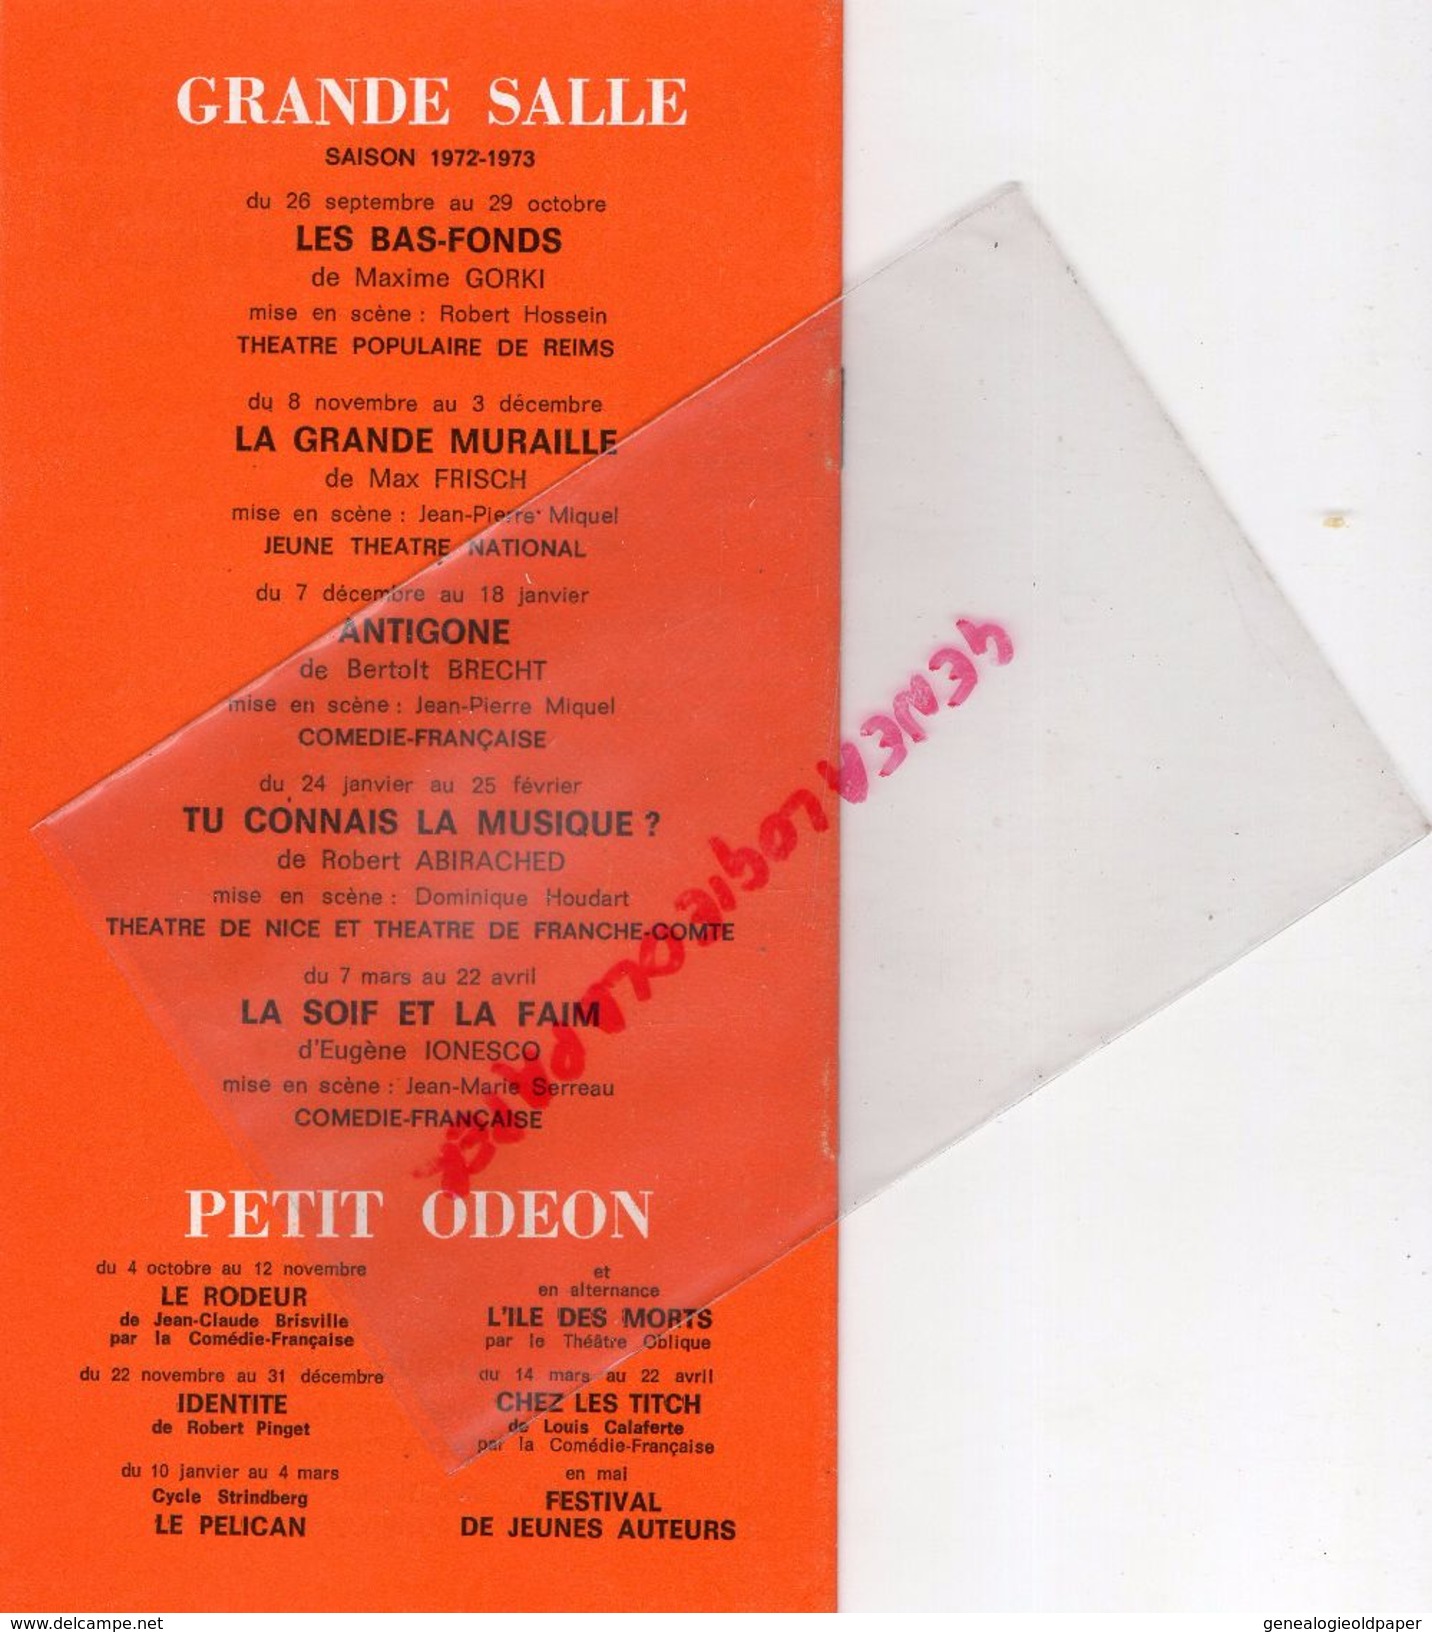 75- PARIS- PROGRAMME THEATRE ODEON -PIERRE DUX-72/73-ANTIGONE-BERTOLT BRECHT-SOPHOCLE-J.P. MIQUEL-CHAUMETTE-SILBERG